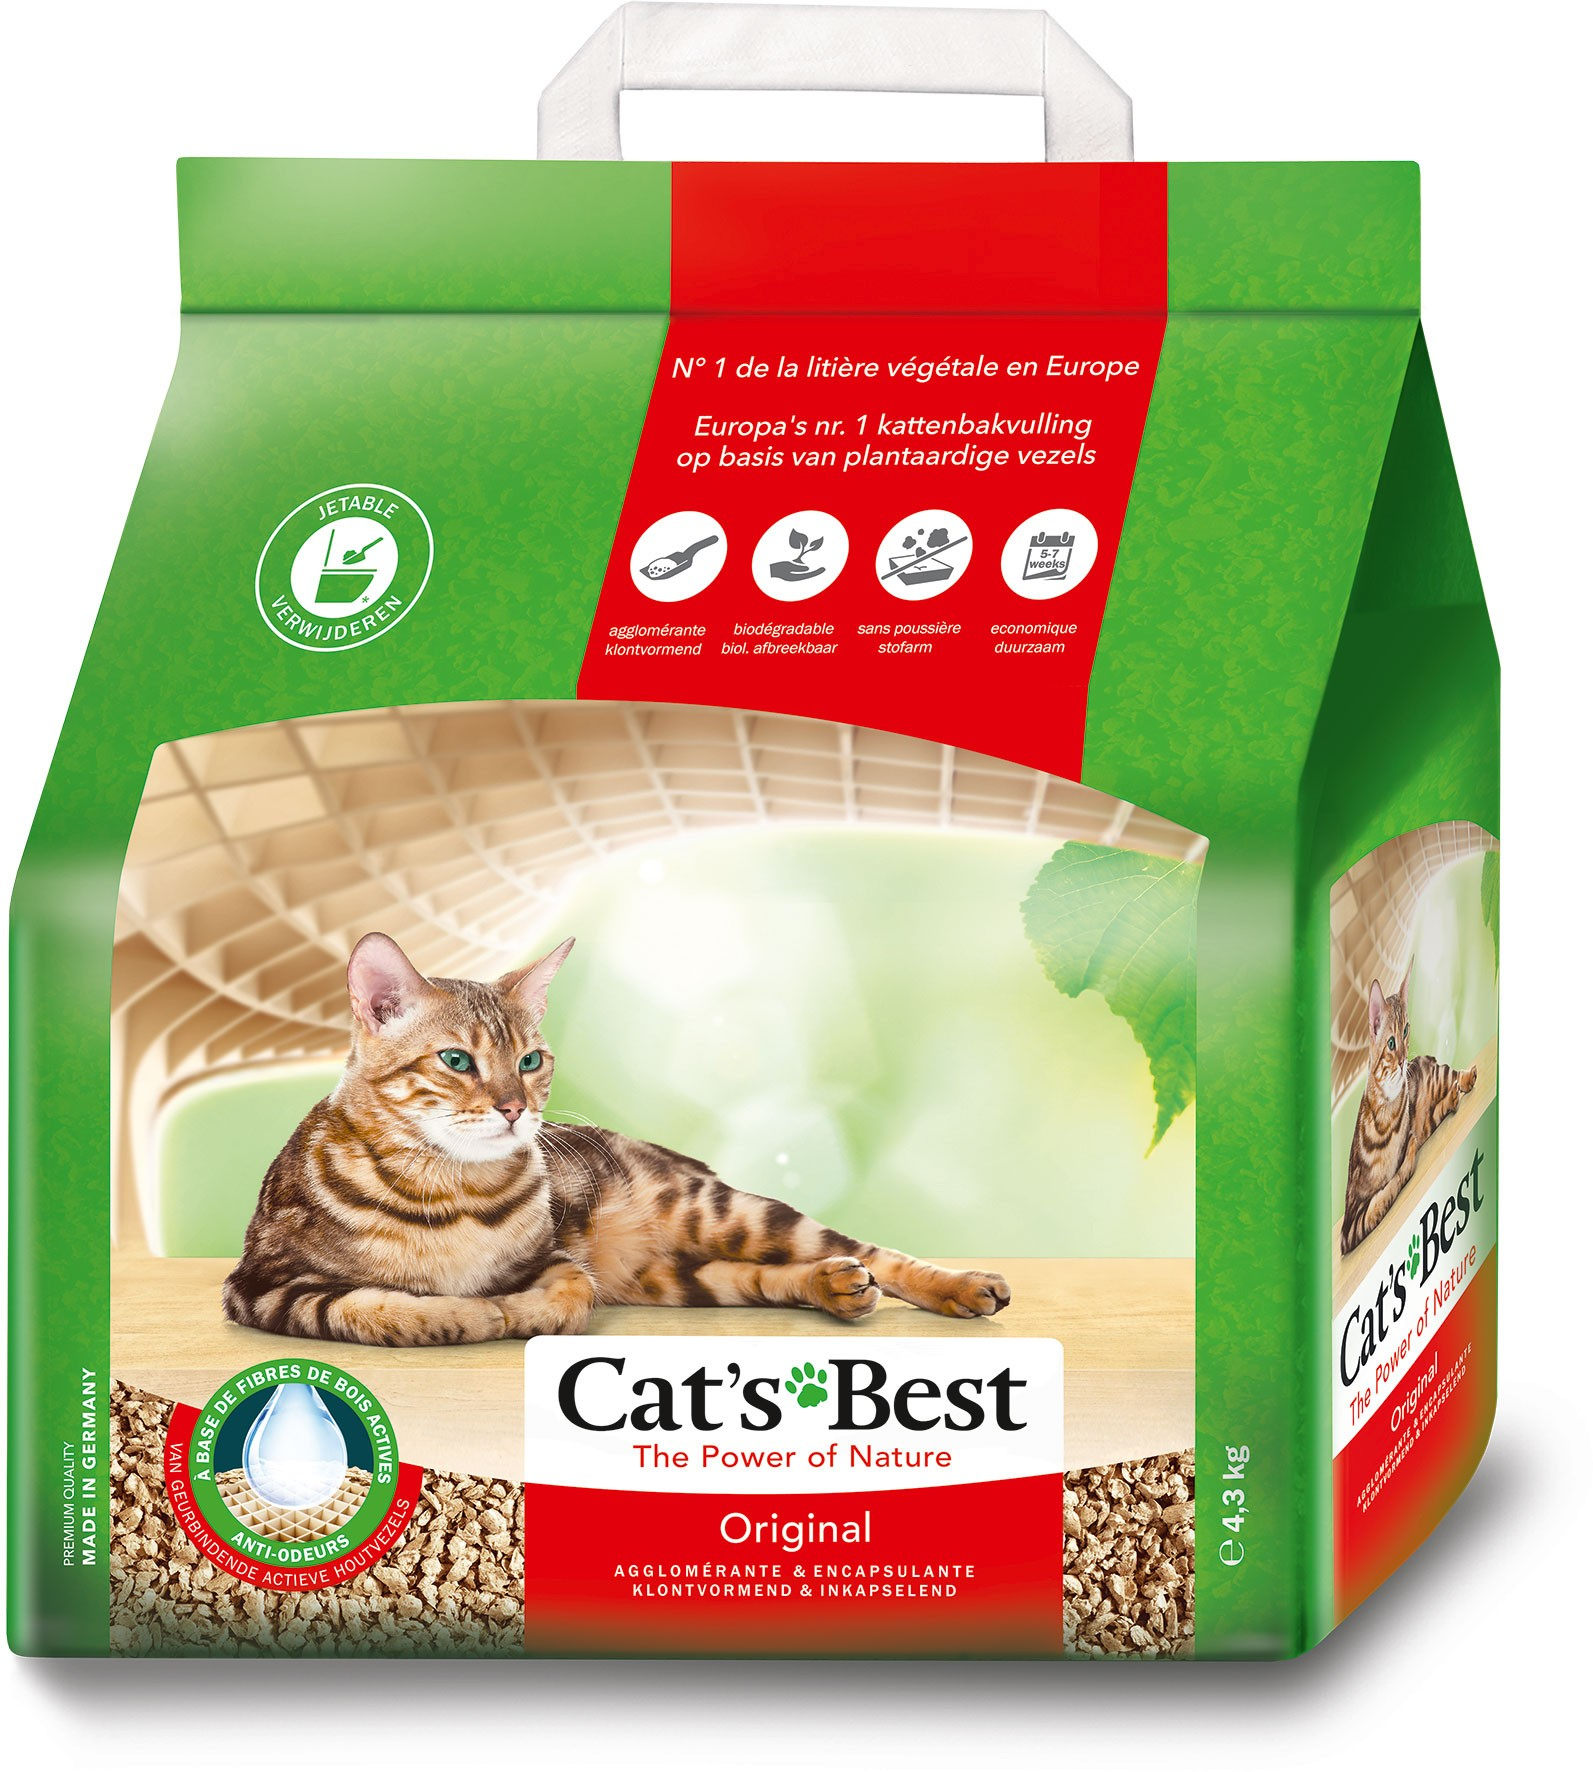 Cat’s Best Original - Areia vegetal aglomerante para gatos